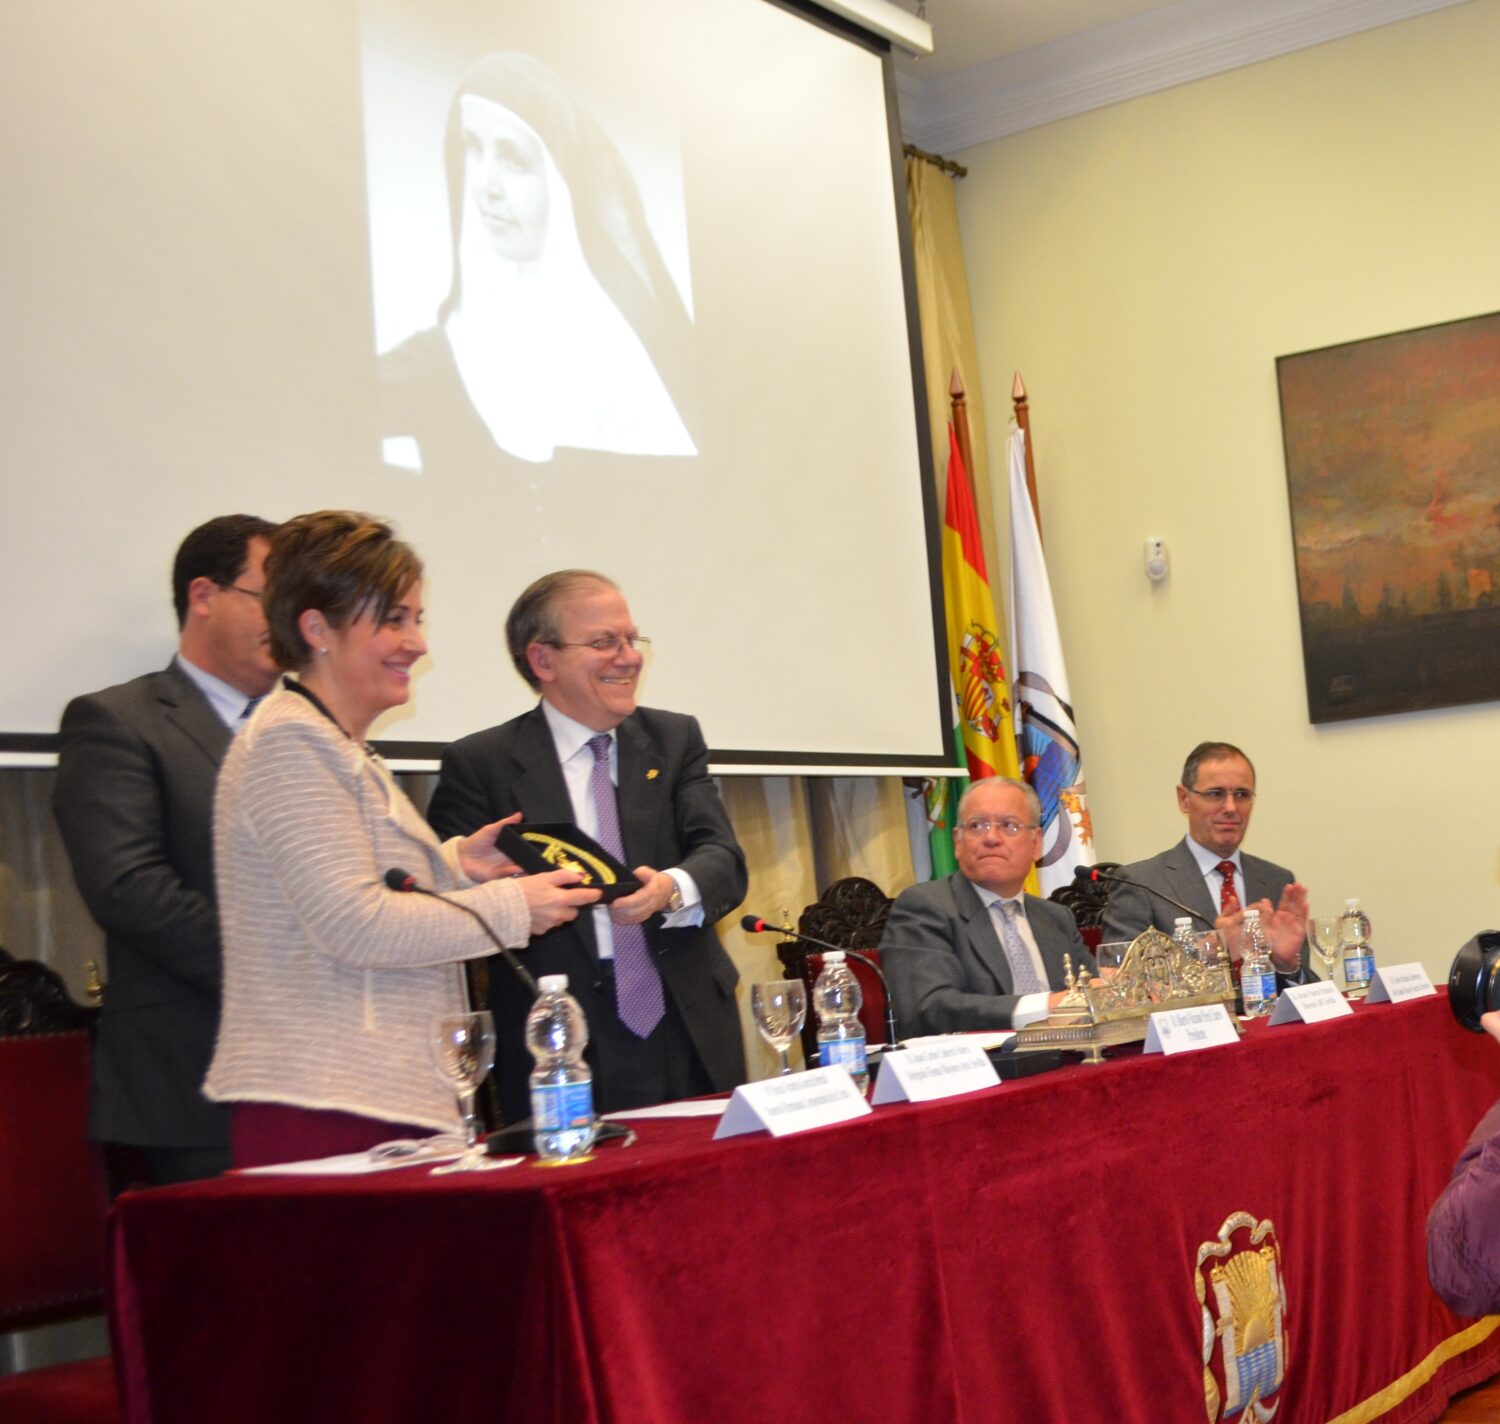 Mª Victoria García Bernal recoge el galardón de manos del Presidente del Ateneo. En la mesa además, Juan Carlos Cabrera, Álvaro Ybarra Pacheco y Carlos Palacios